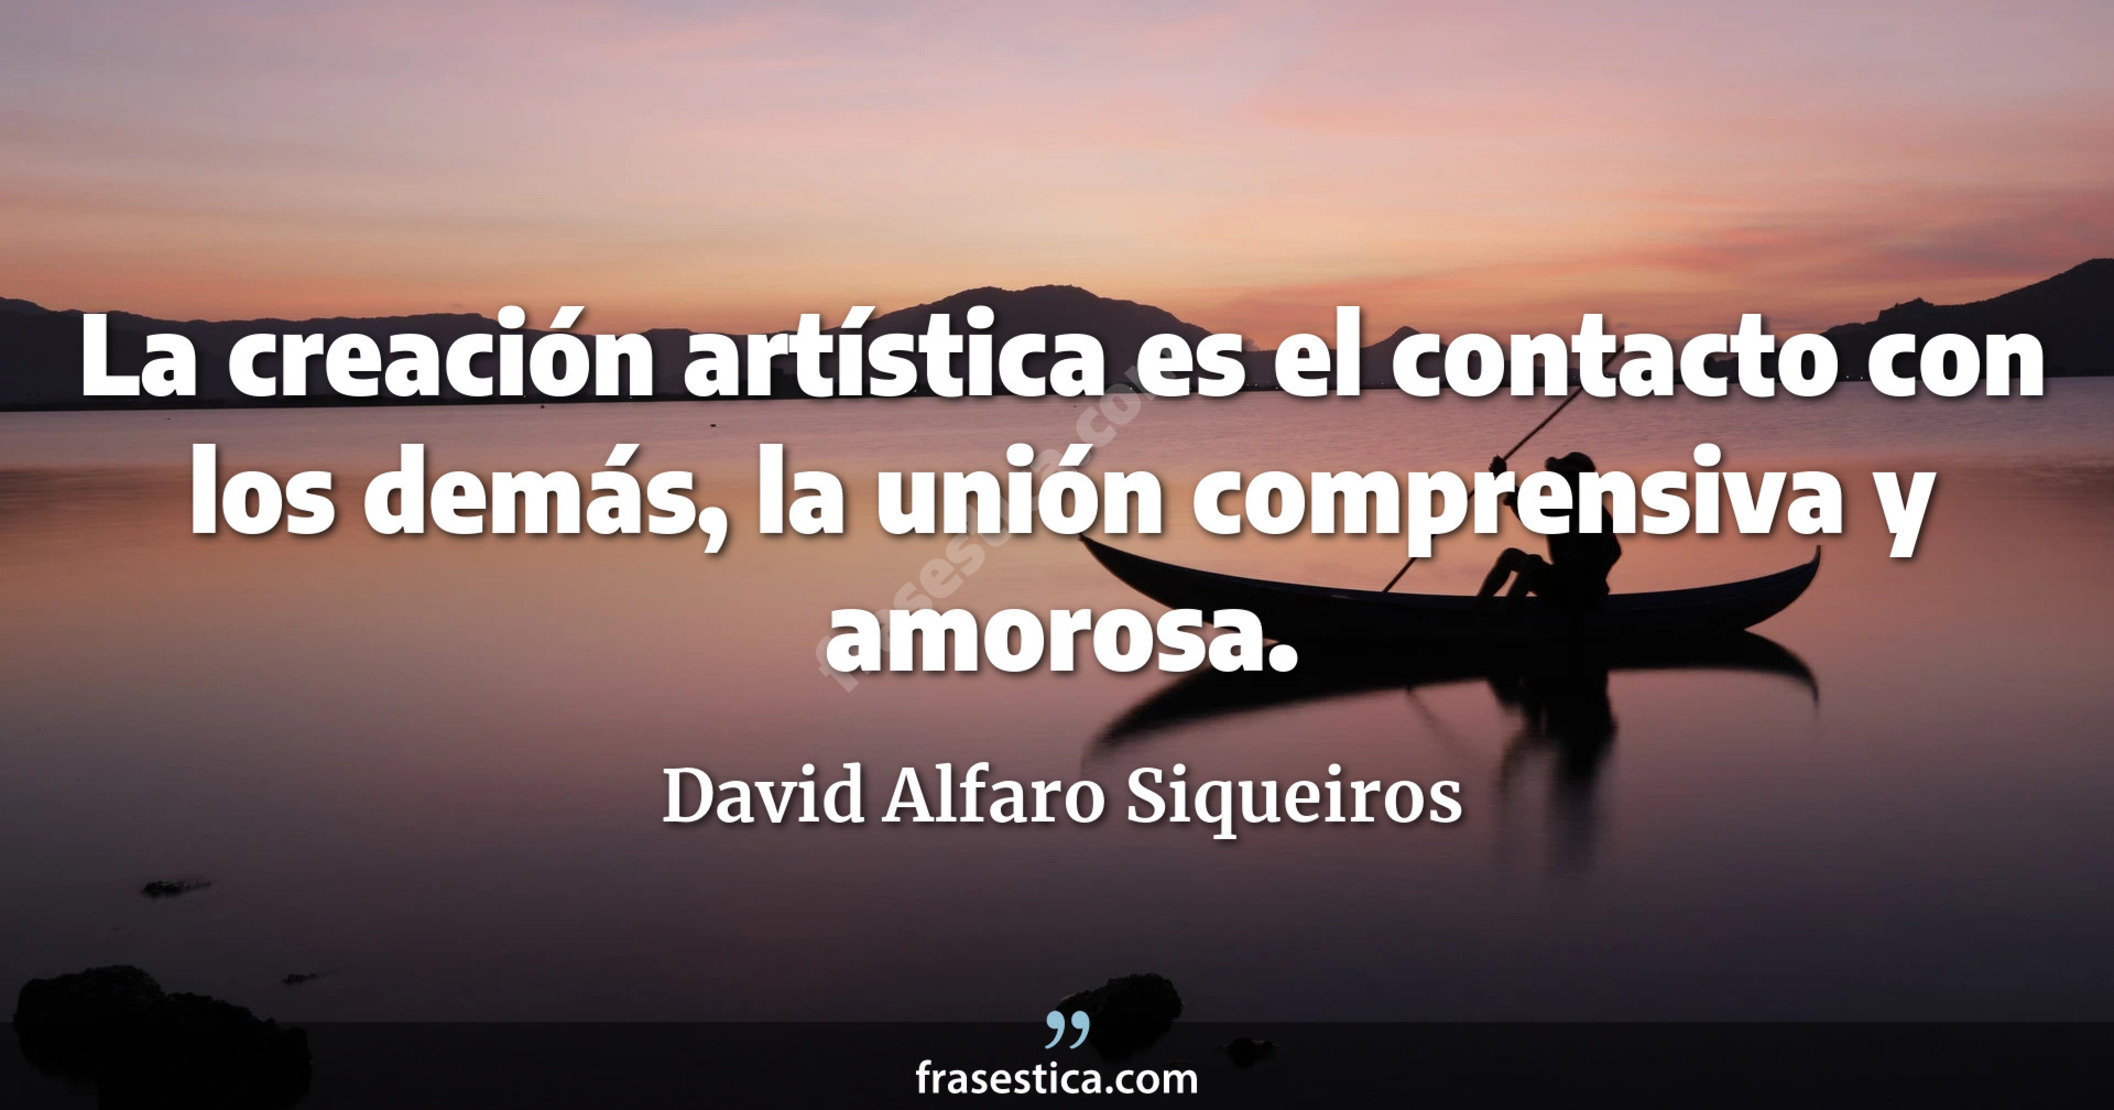 La creación artística es el contacto con los demás, la unión comprensiva y amorosa. - David Alfaro Siqueiros